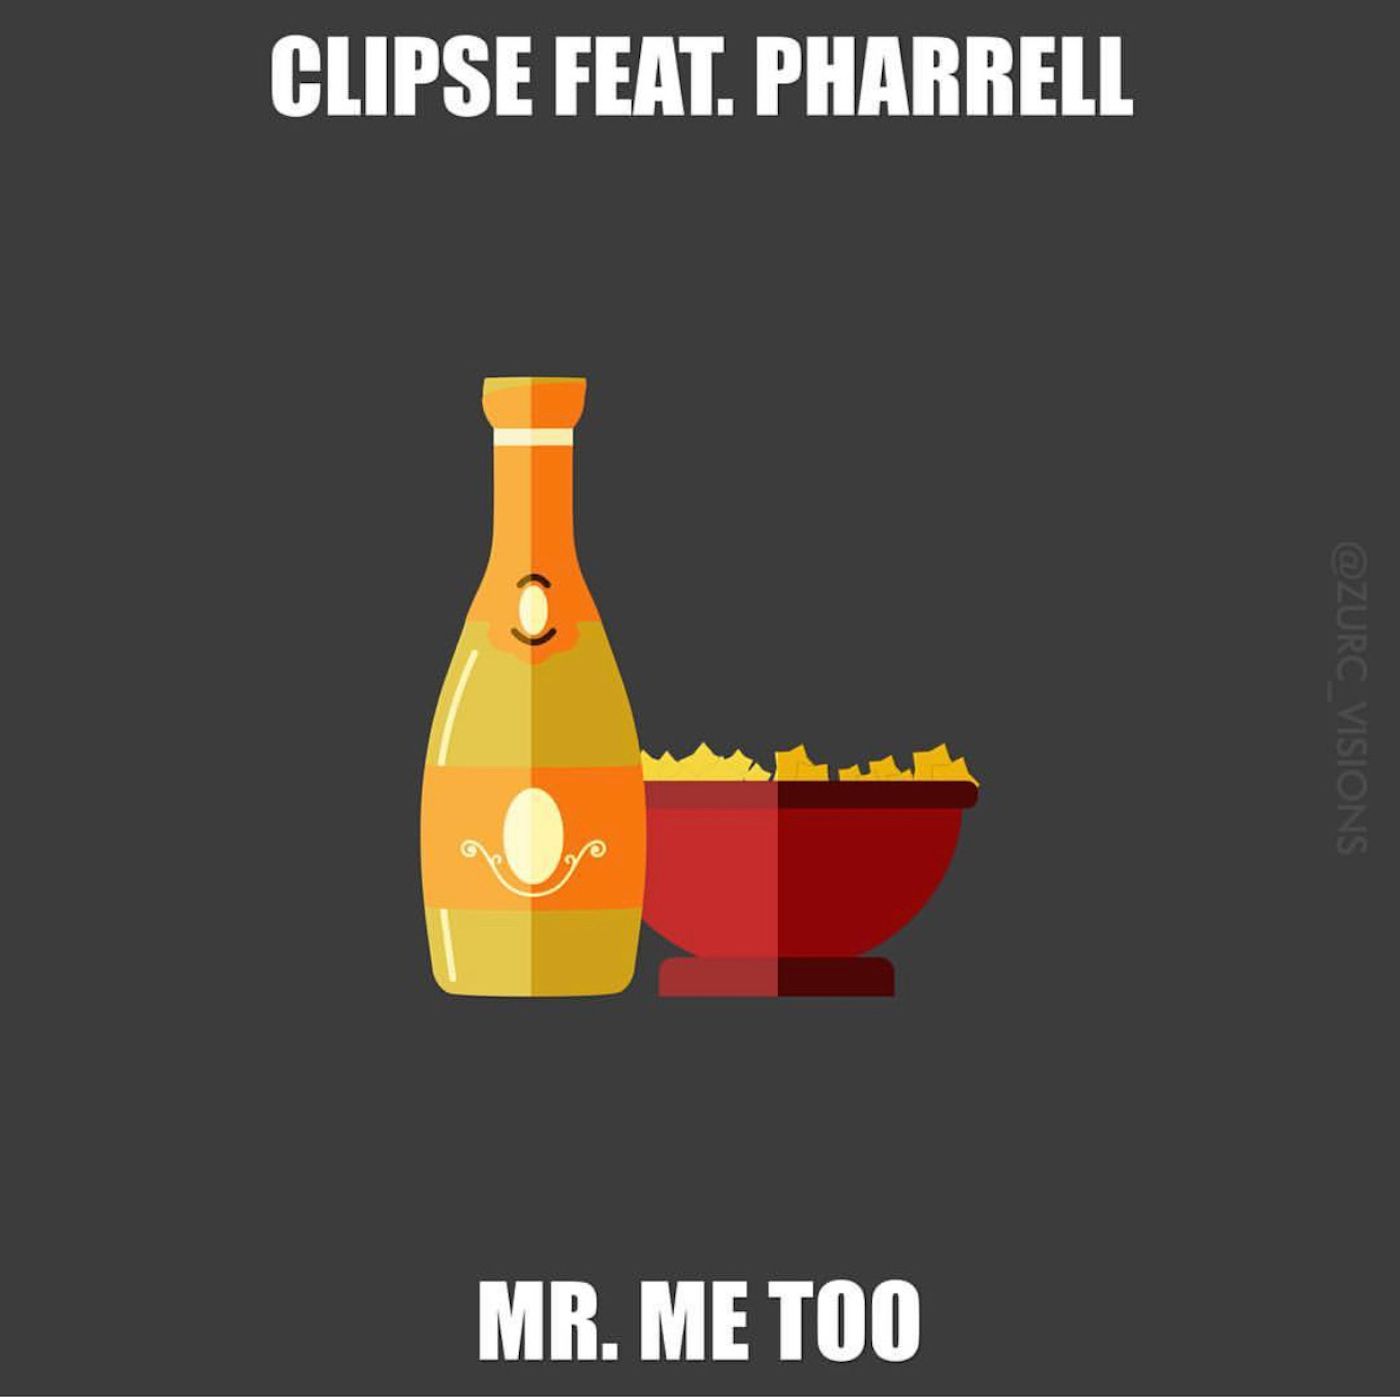 Mr Me Too - The Clipse feat. Pharrell - Whooshkaa